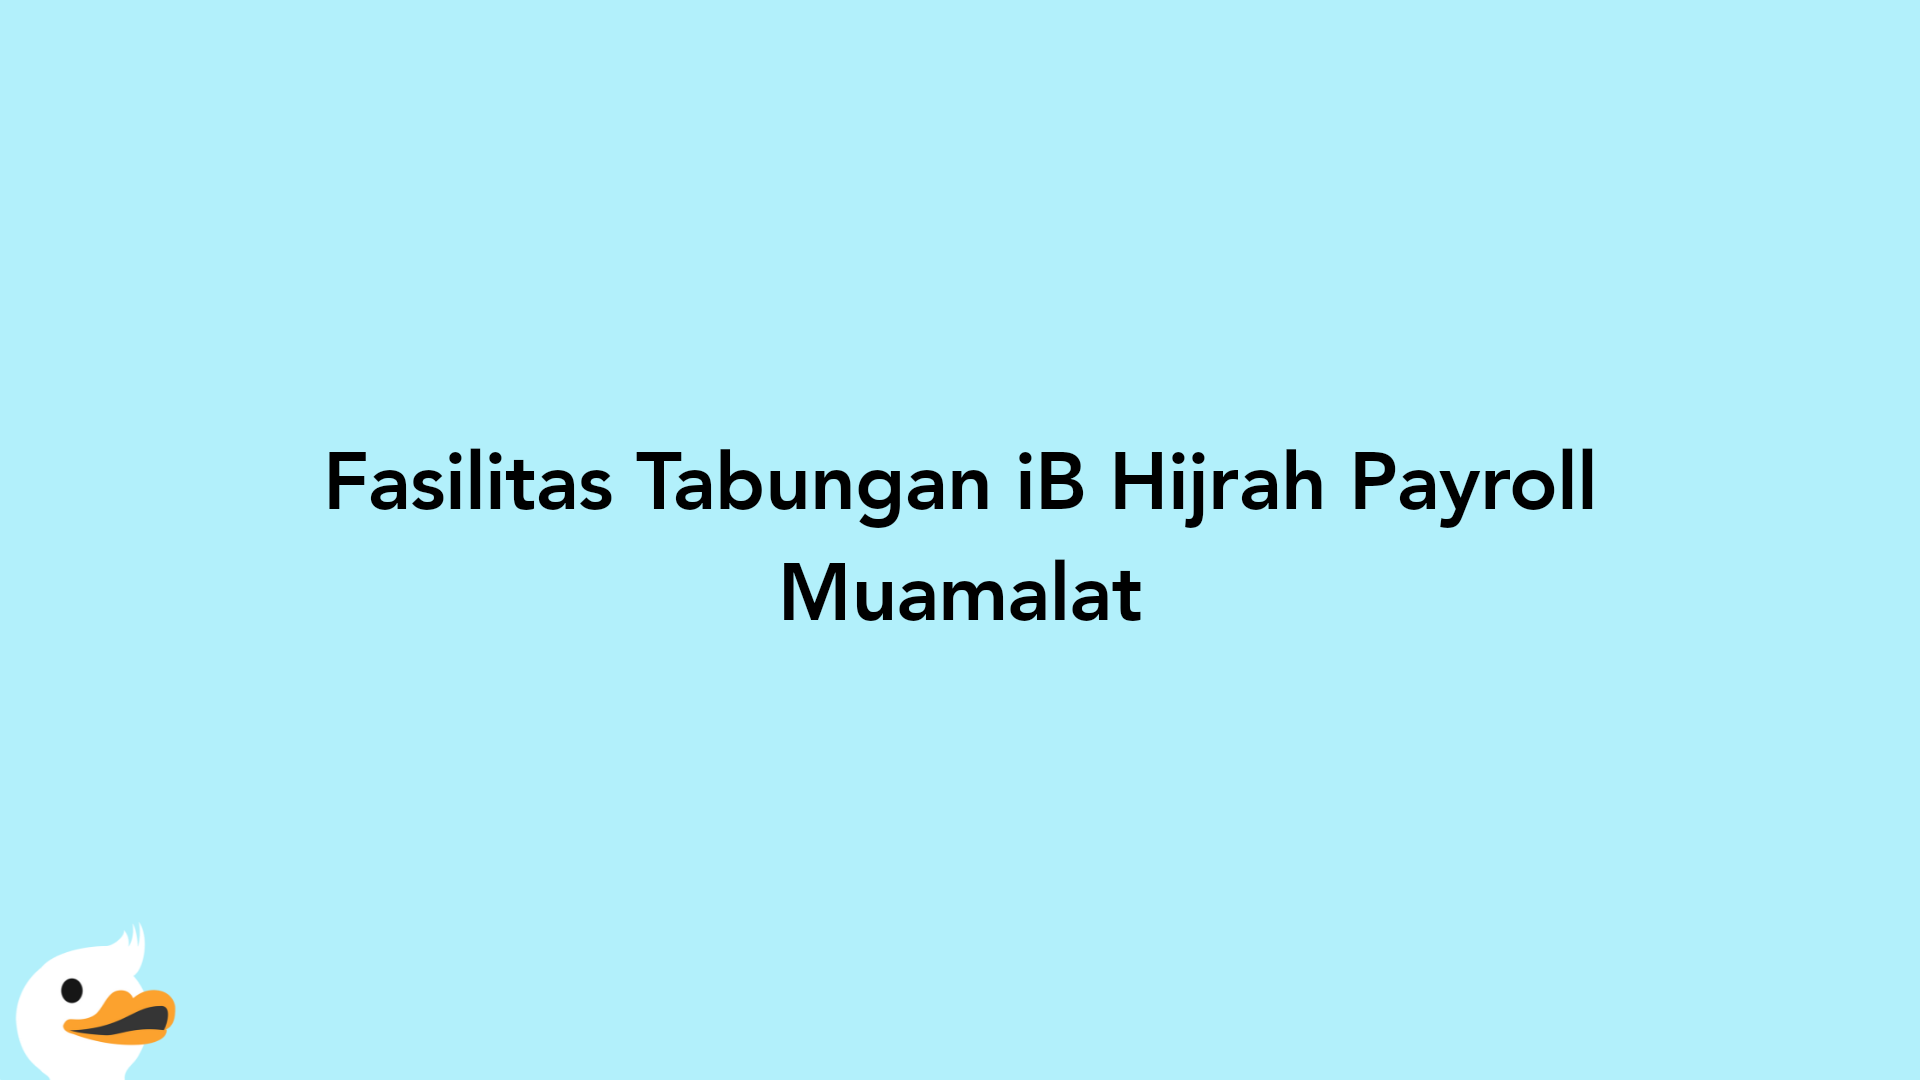 Fasilitas Tabungan iB Hijrah Payroll Muamalat